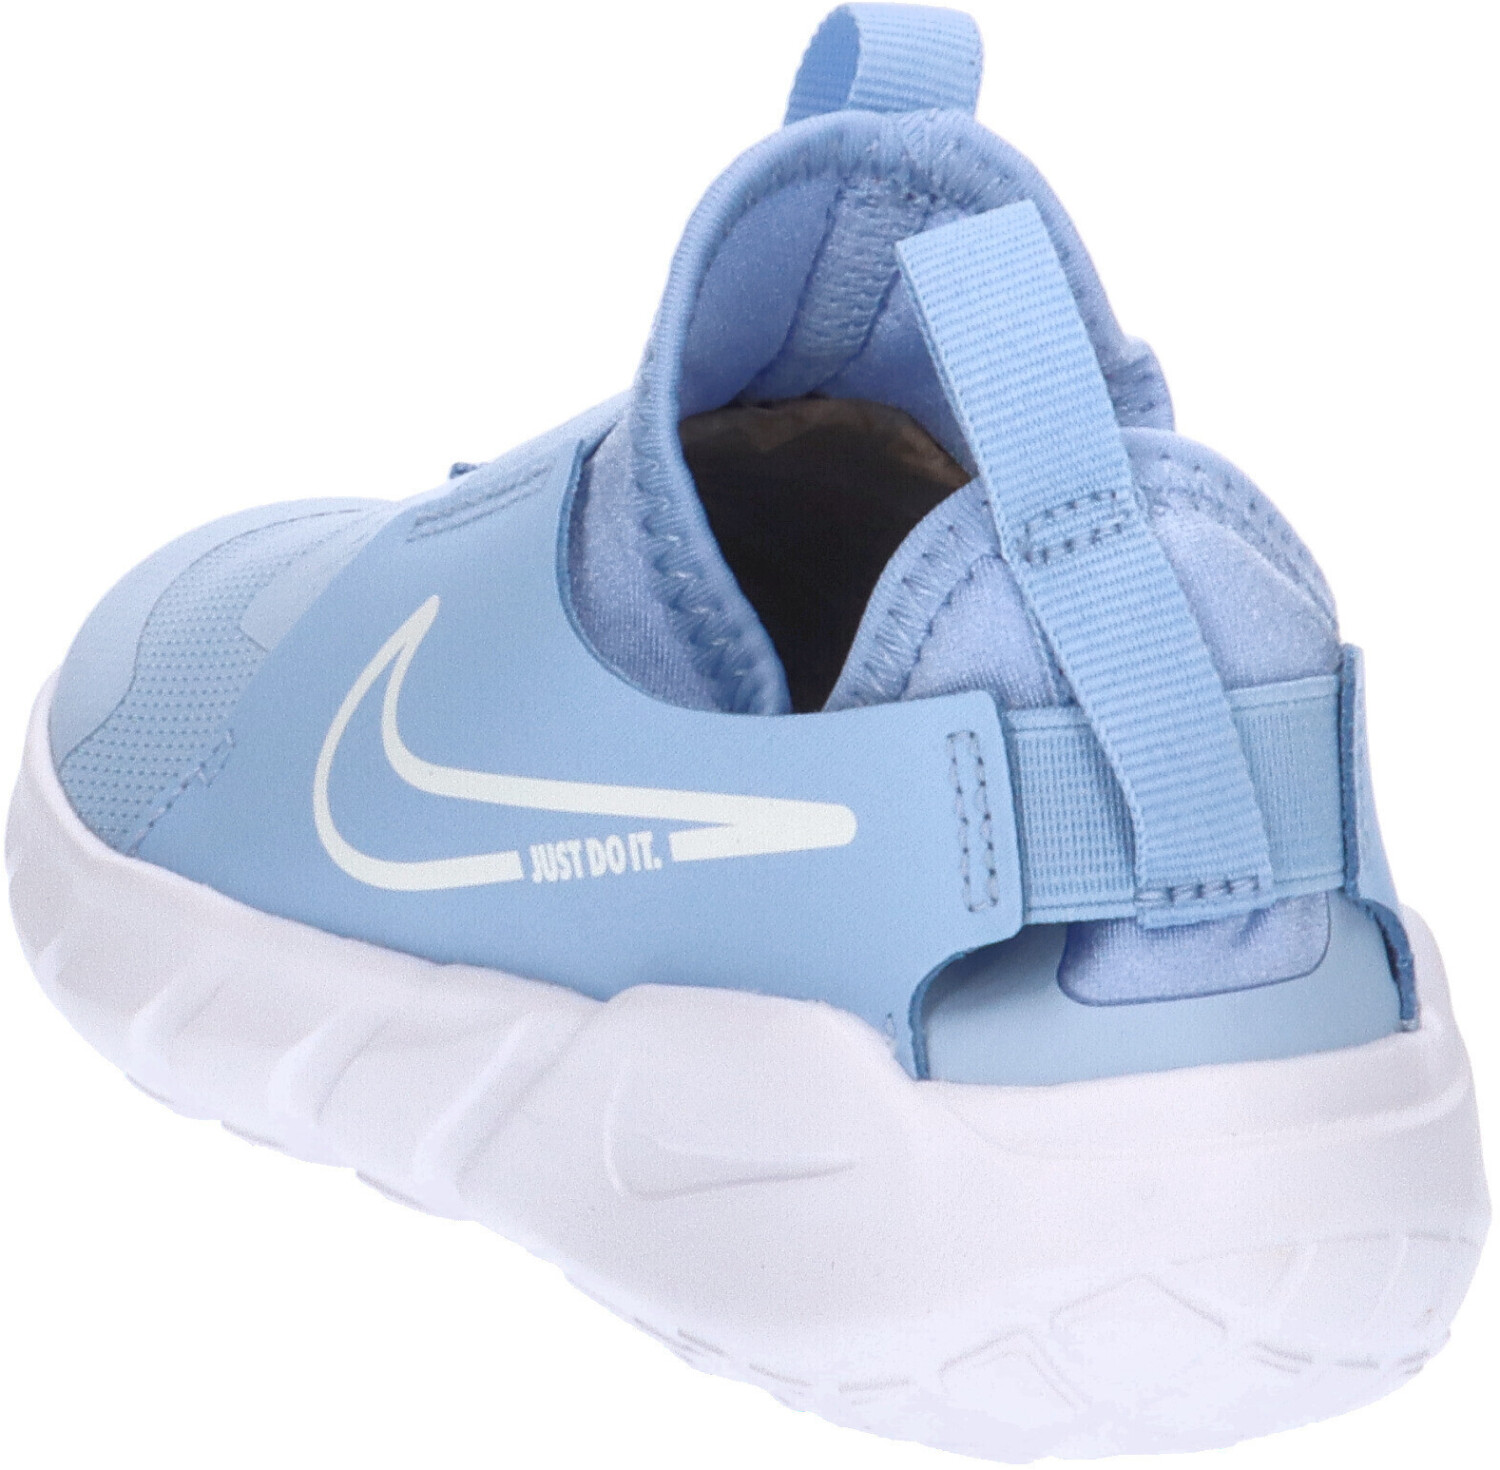 £23.00 Kids Best 2 cobalt – bliss/white Nike Flex (Today) Deals on Runner Buy from